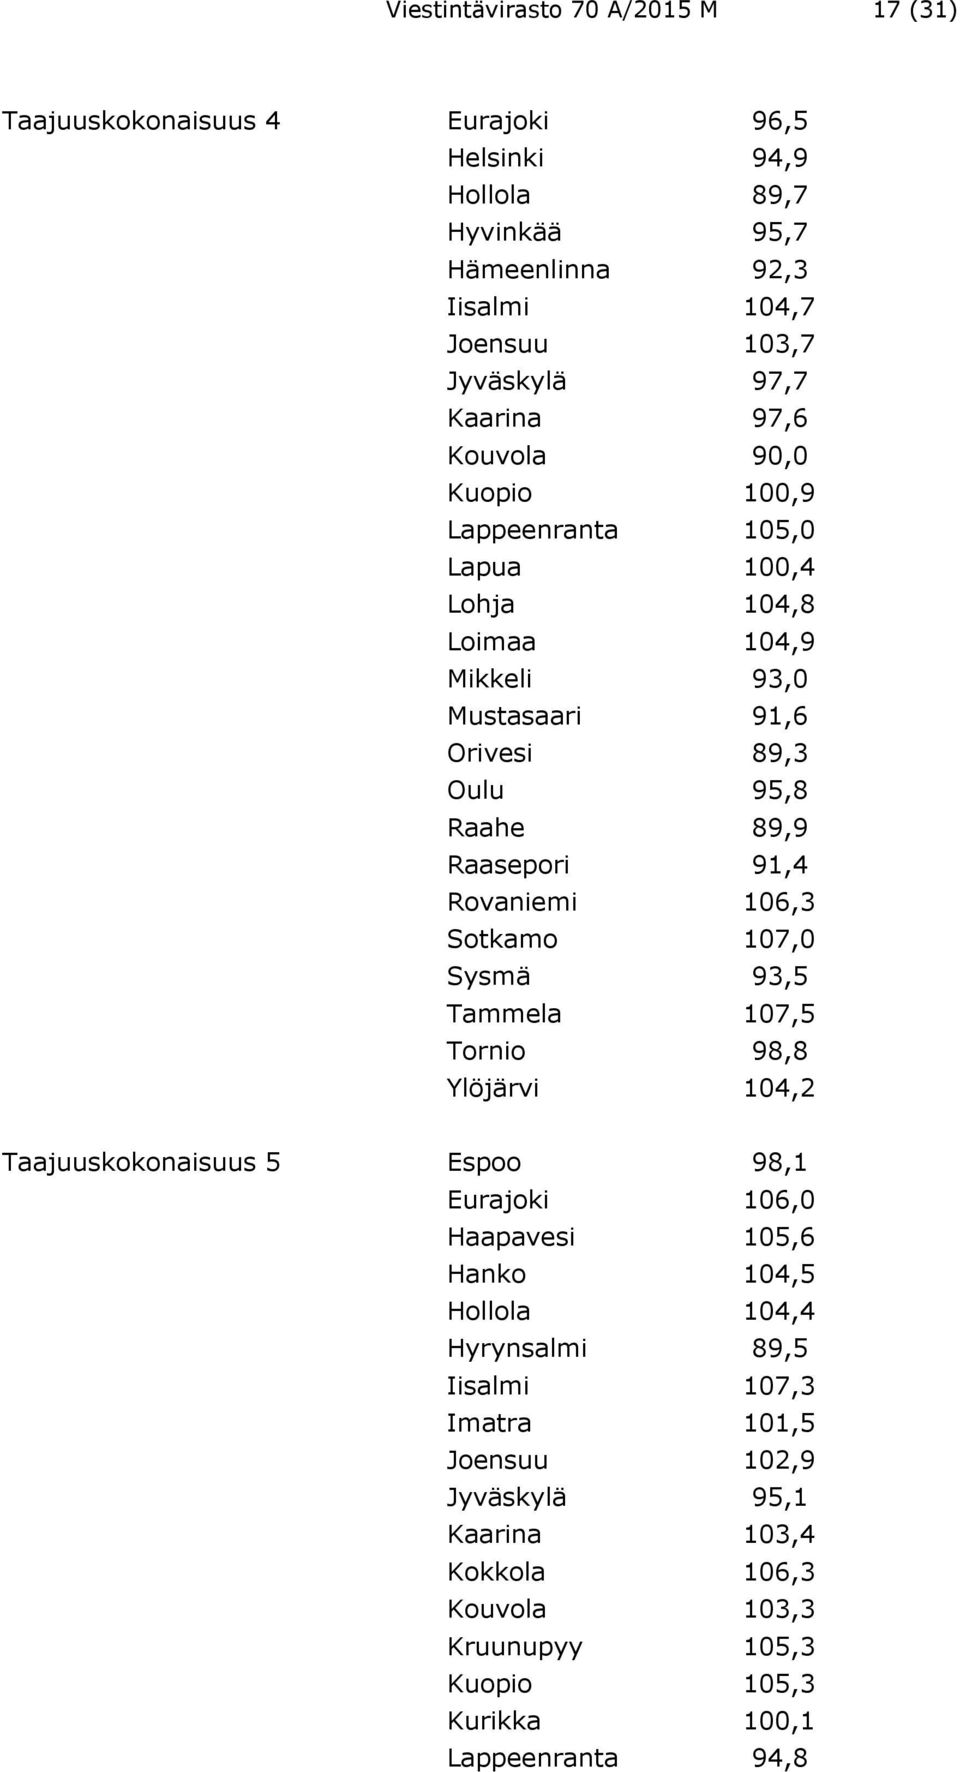 Rovaniemi 106,3 Sotkamo 107,0 Sysmä 93,5 Tammela 107,5 Tornio 98,8 Ylöjärvi 104,2 Taajuuskokonaisuus 5 Espoo 98,1 Eurajoki 106,0 Haapavesi 105,6 Hanko 104,5 Hollola 104,4